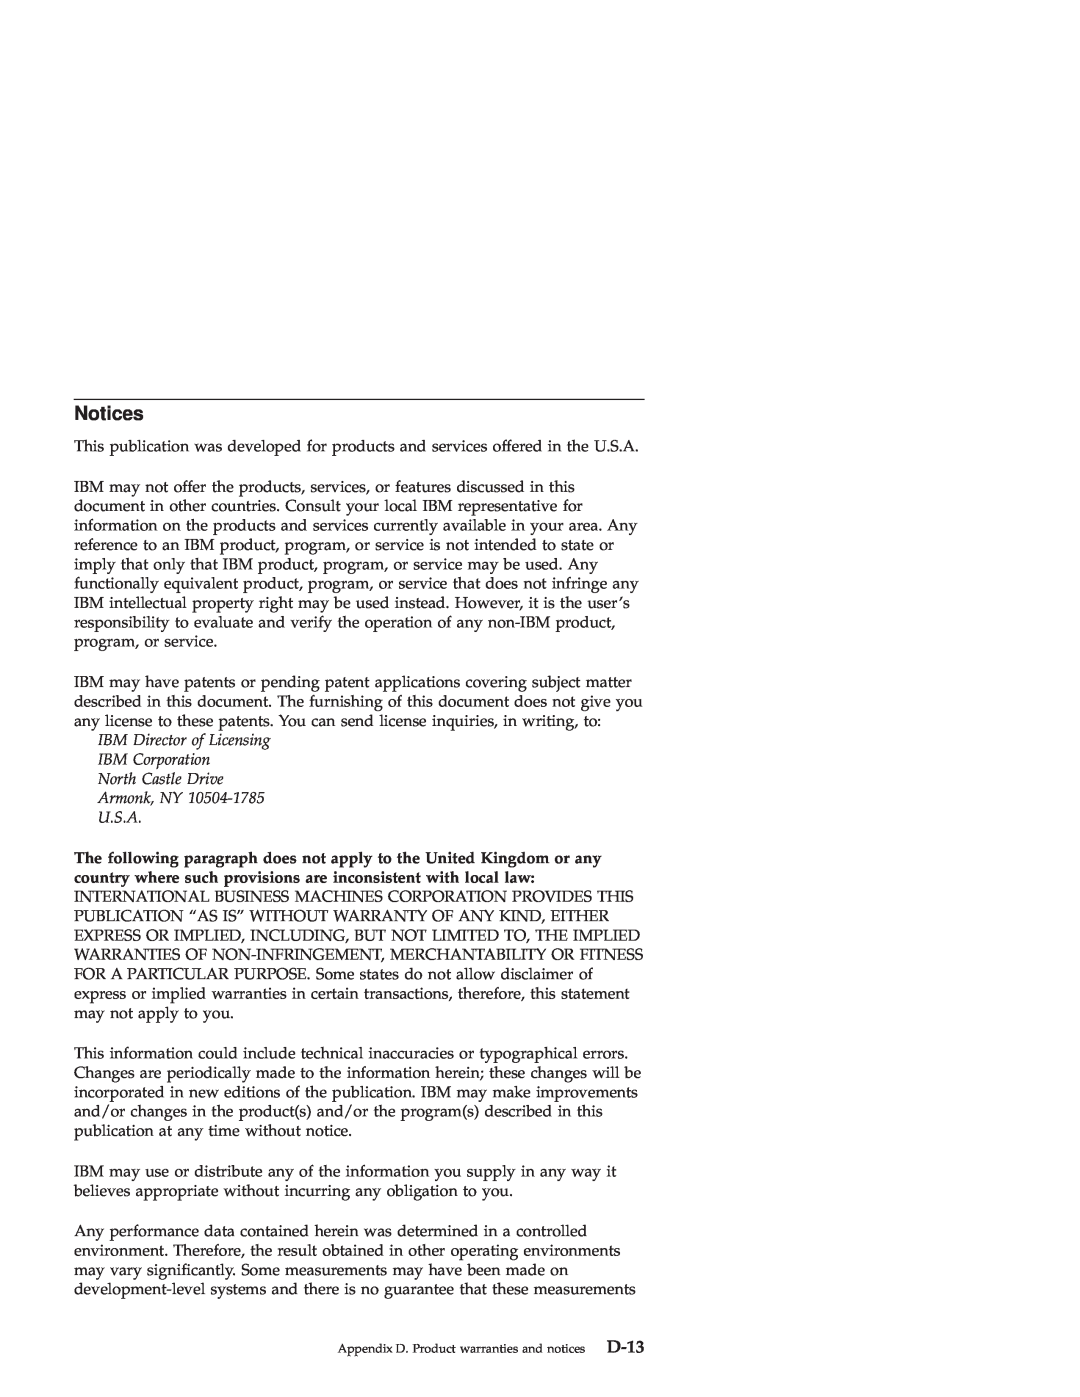 IBM 48X-20X manual Notices, D-13 